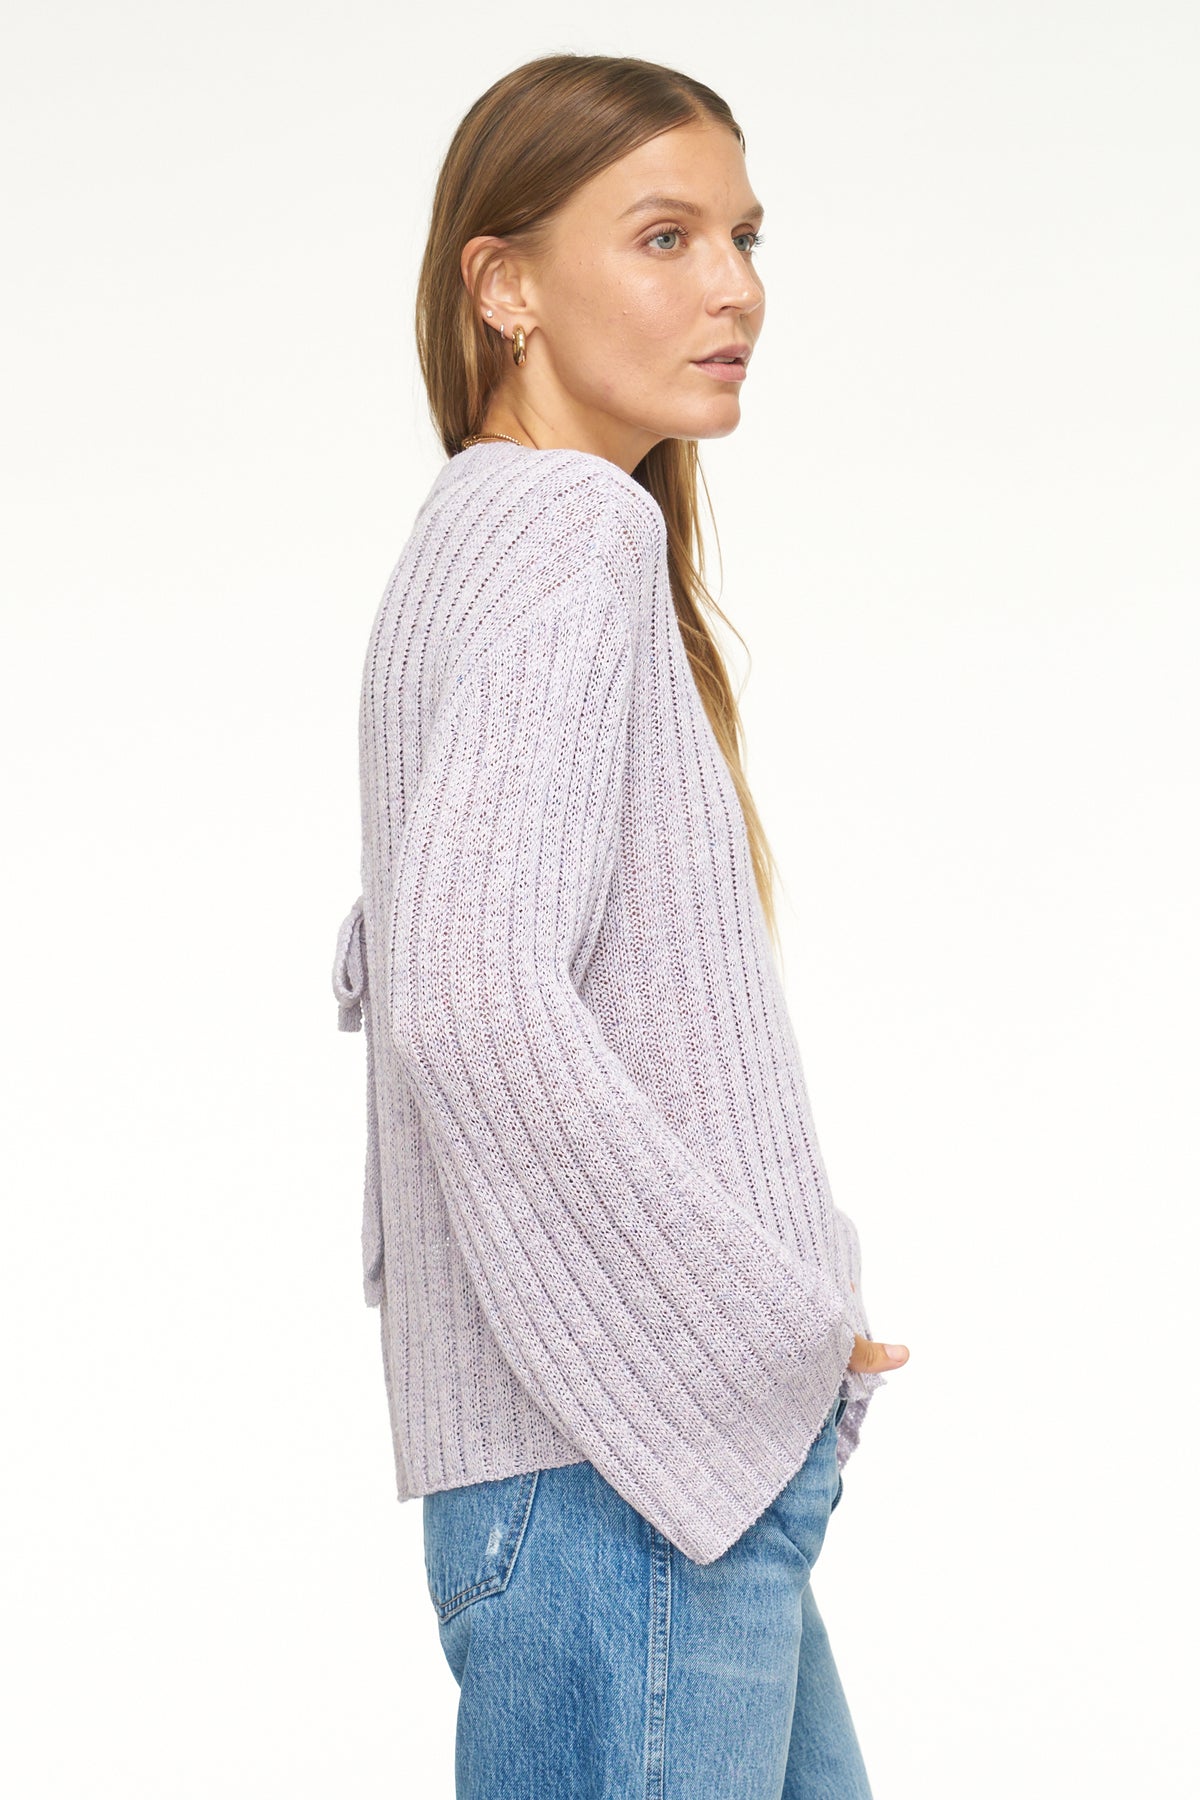 Britt Open Back Bell Sleeve Sweater - Iris